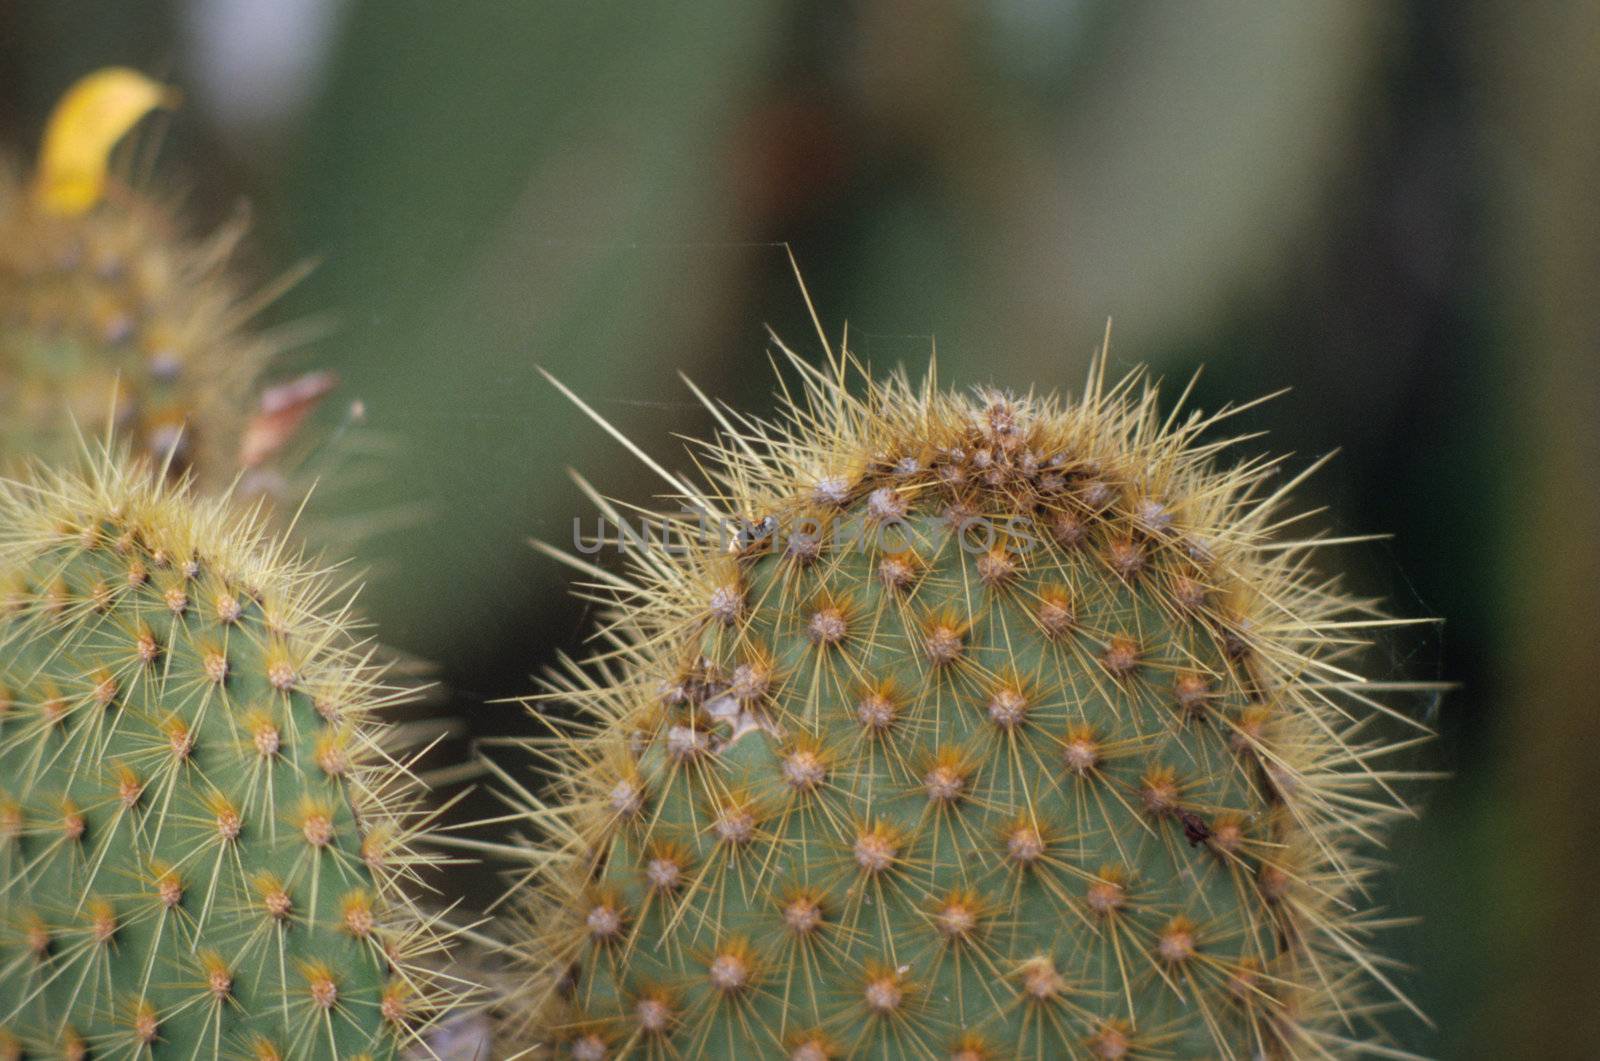 Close up photo of spiky cactus leaves, Ecuador